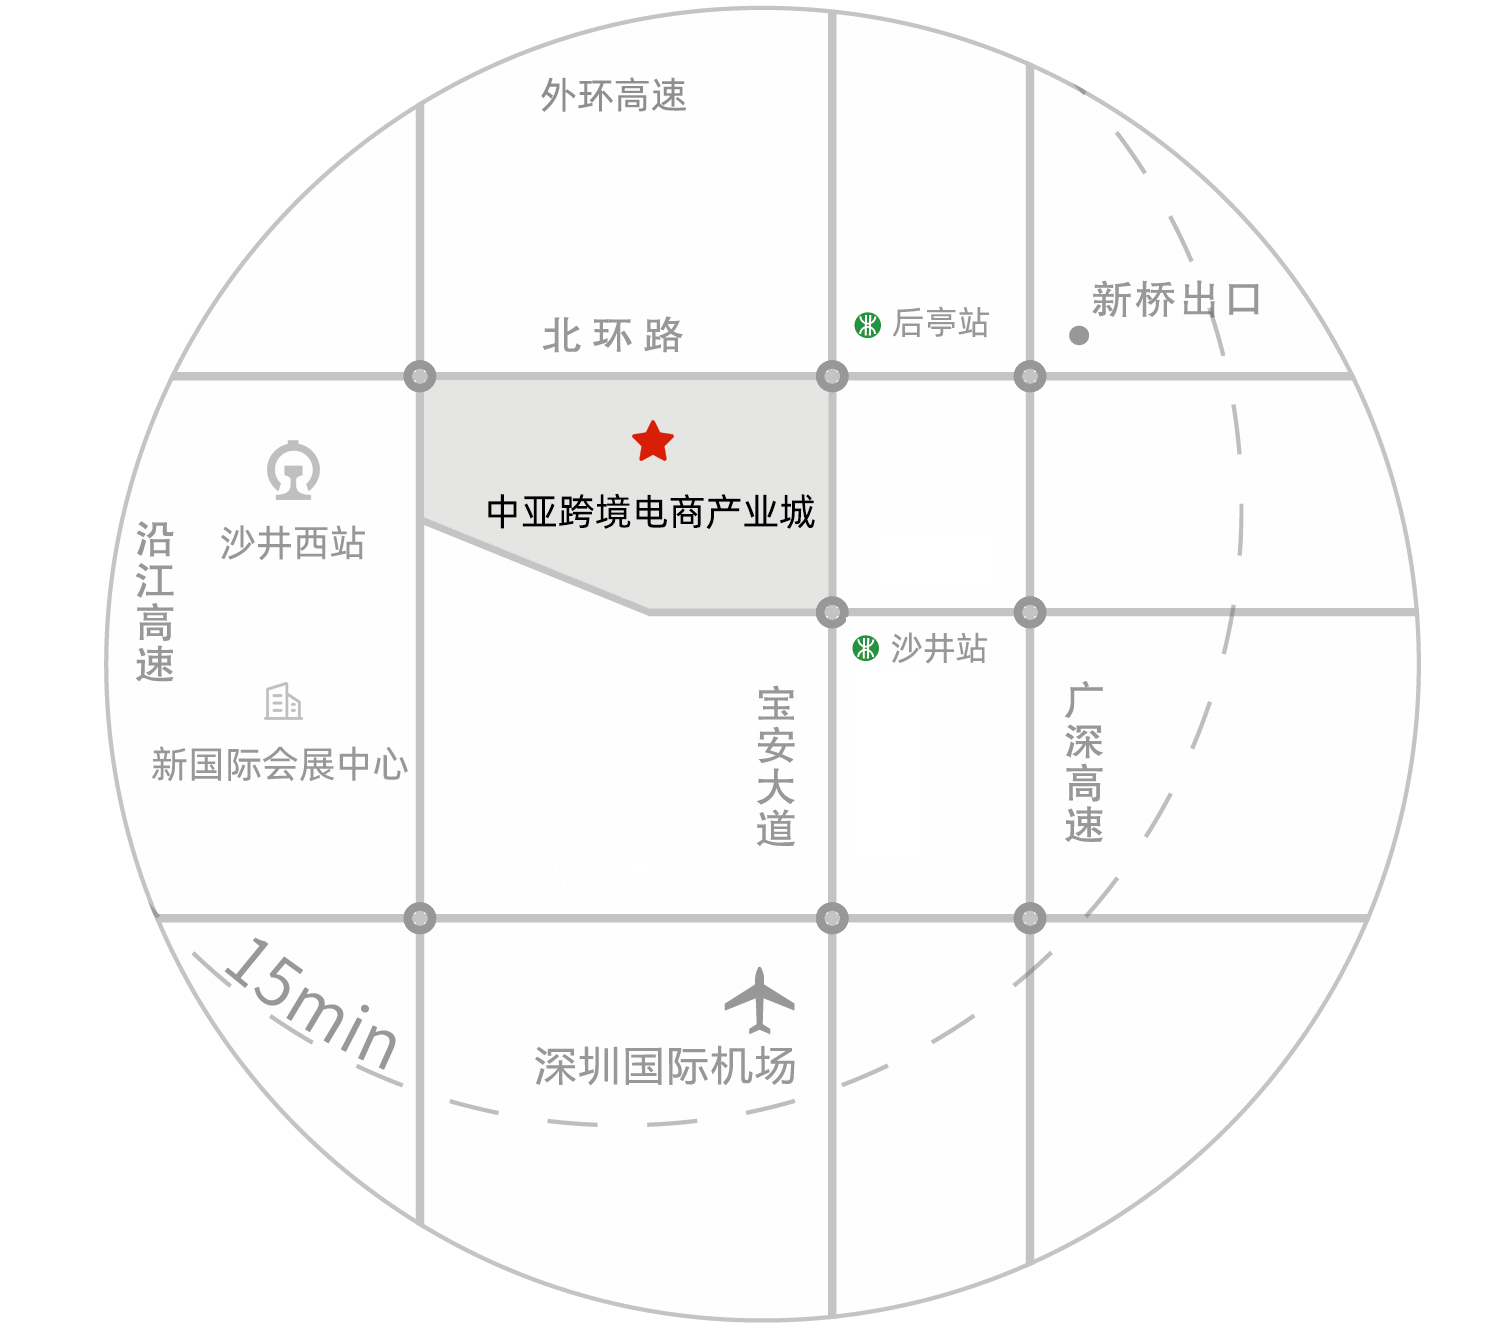 中亚跨境电商产业城平面图